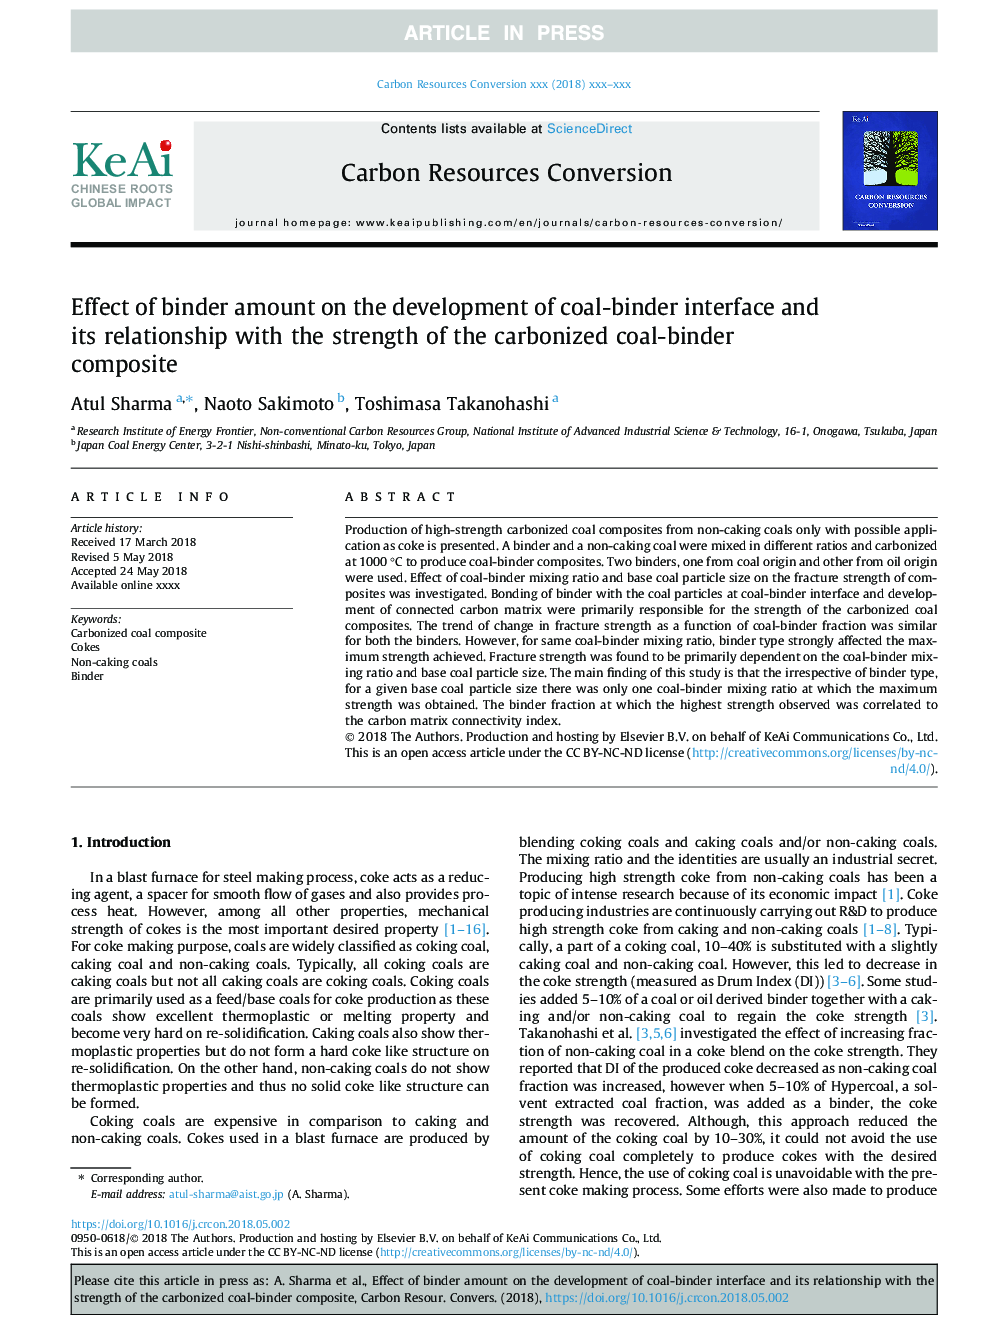 اثر مقدار باندینگ بر توسعه رابط رابط زغال سنگ و رابطه آن با مقاومت کامپوزیت زنجیره کربنیزه شده